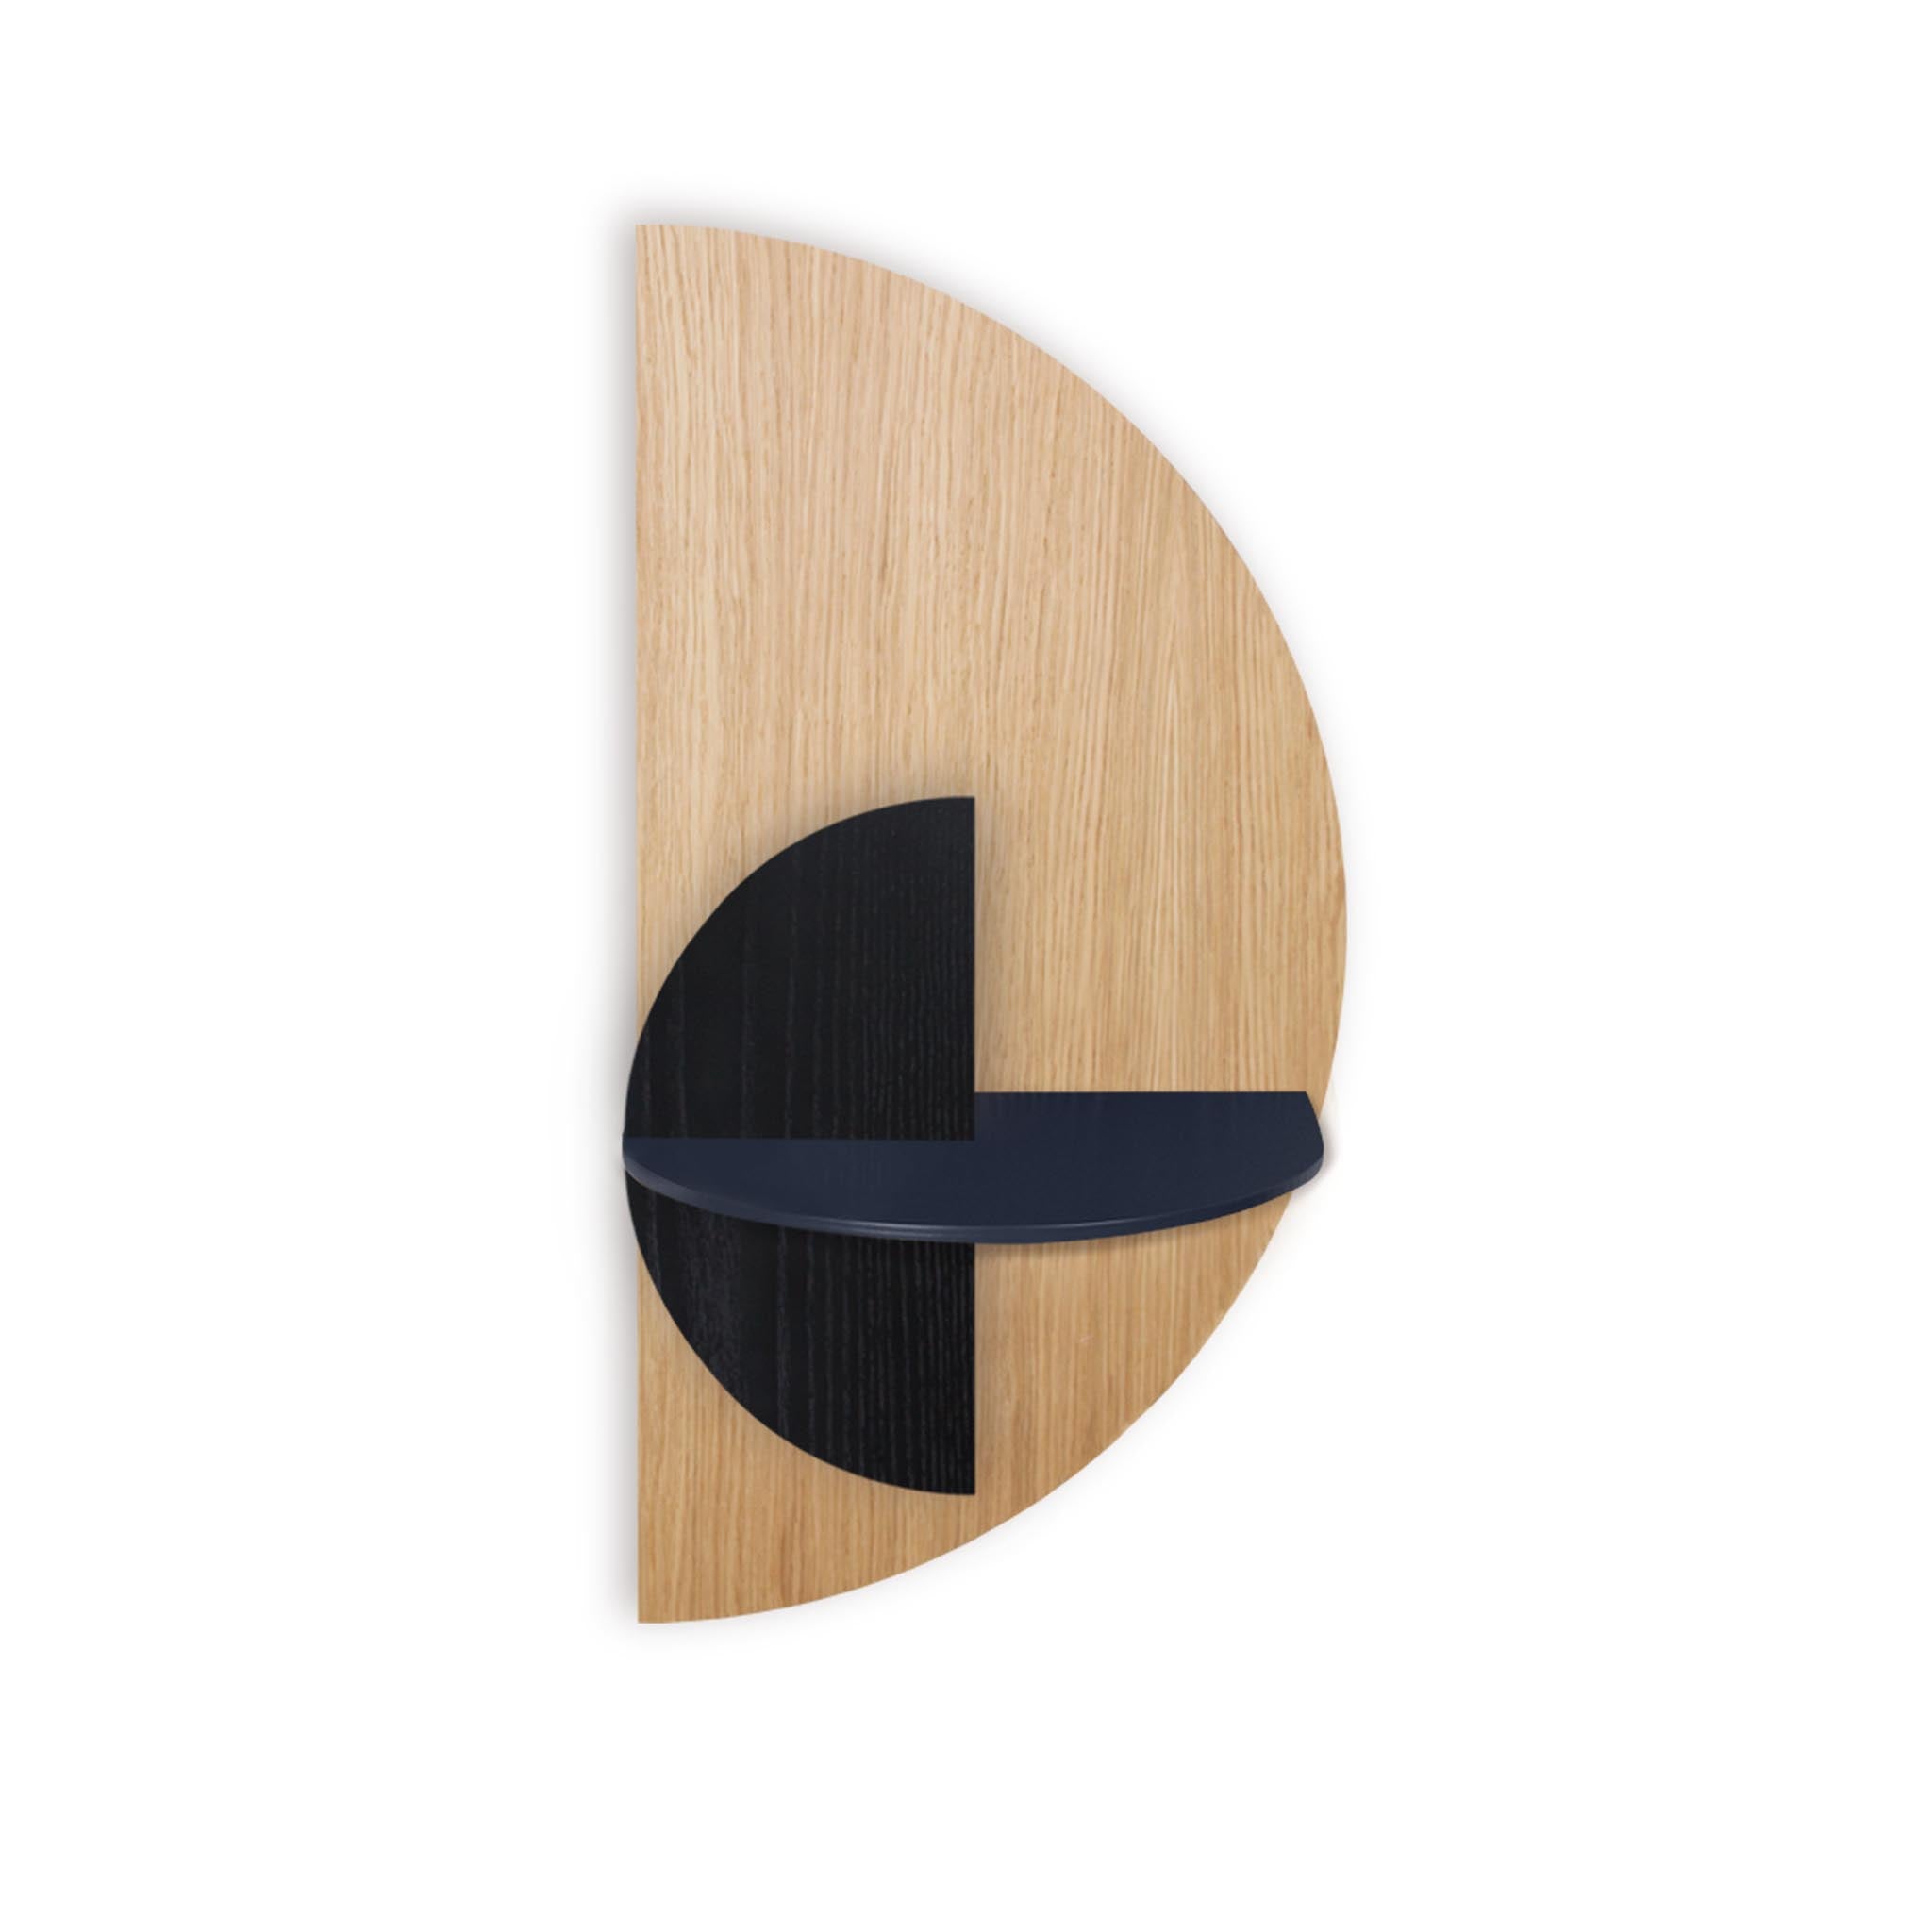 Alba slim floating nightstand · Oak semicircle